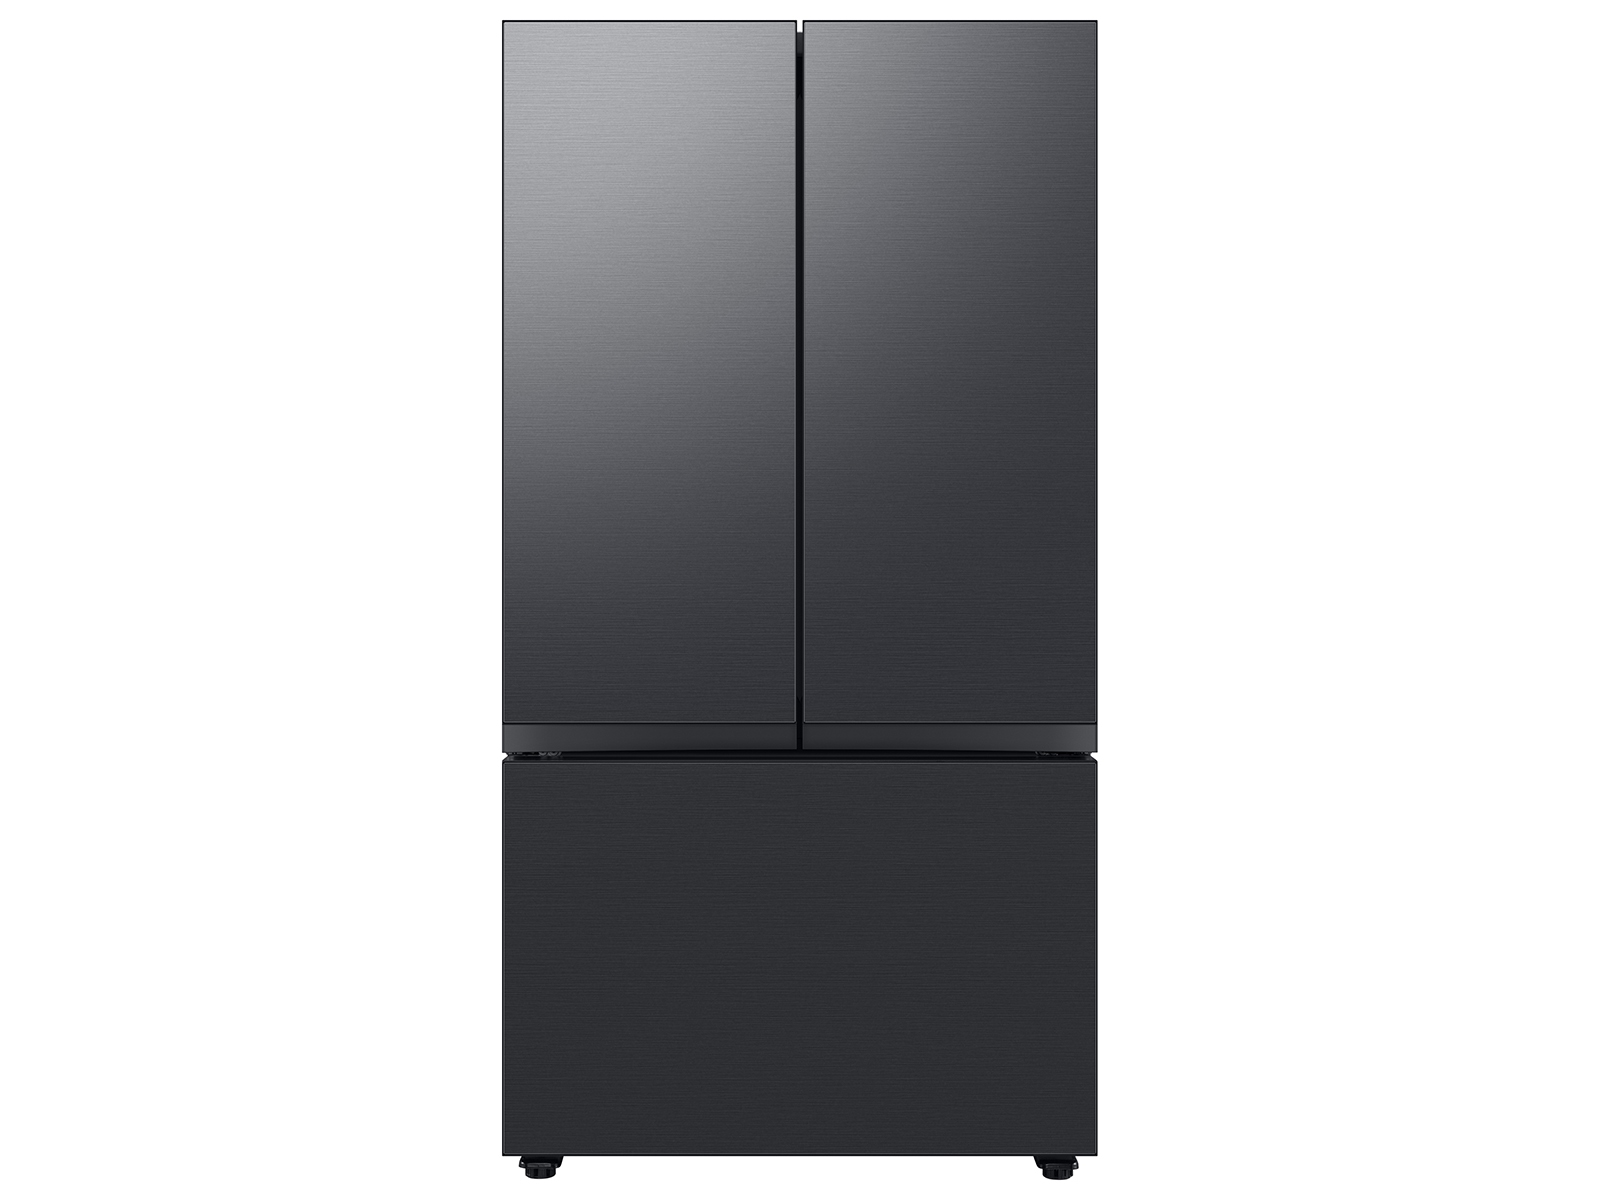 Samsung Bespoke 3-Door French Door Refrigerator (24 cu. ft.) with Beverage Center™ in Matte in Black Steel(BNDL-1650311111843)